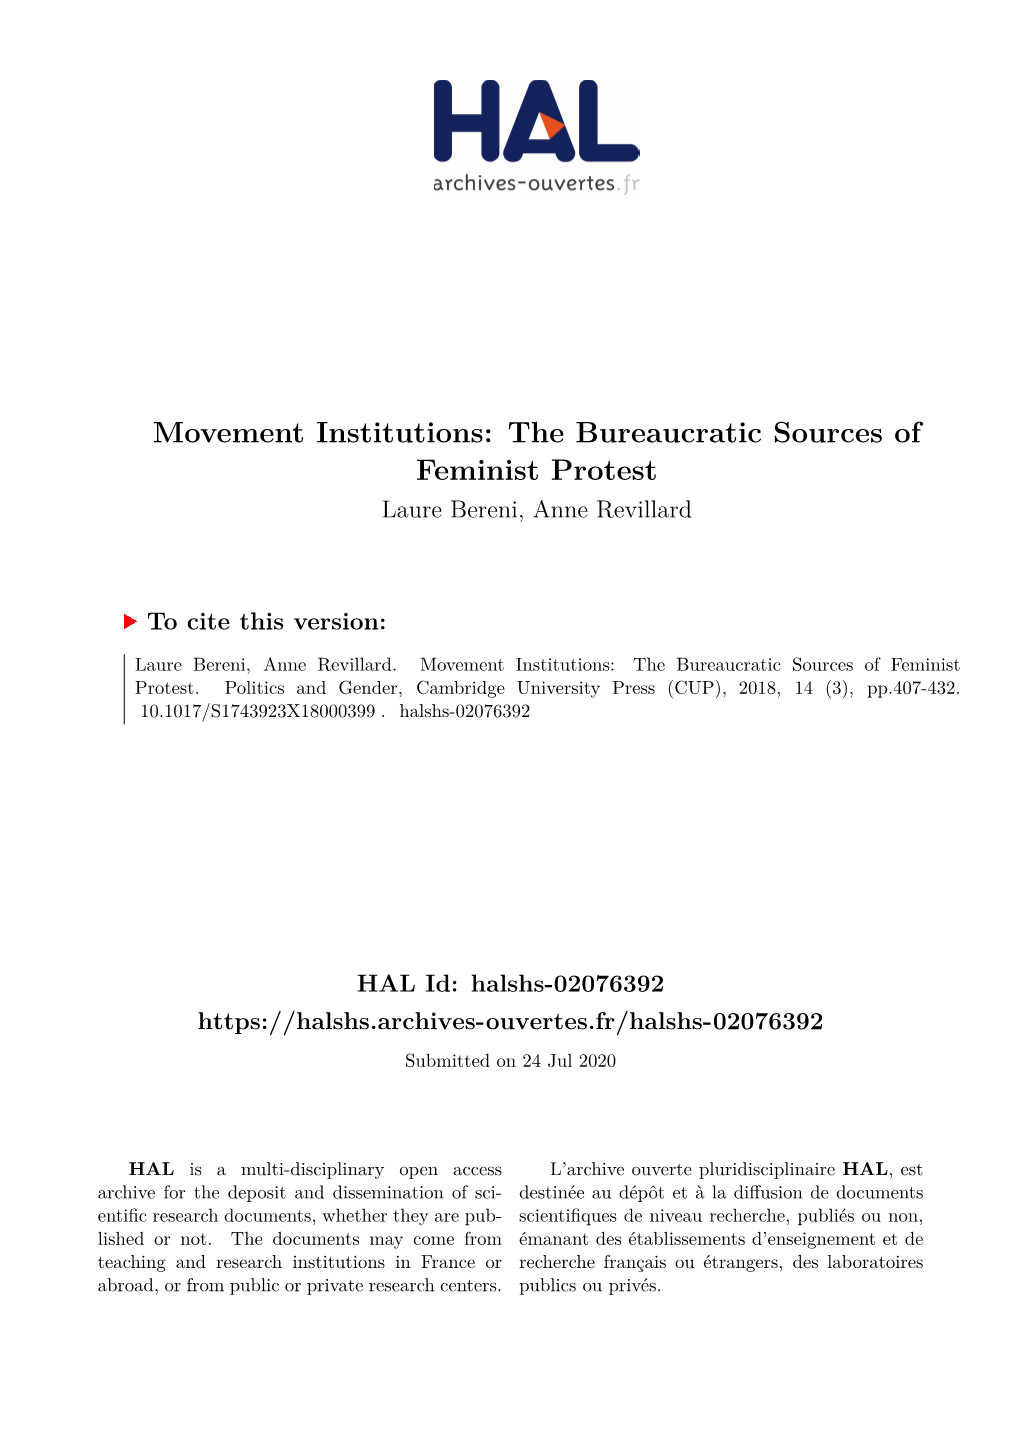 Movement Institutions: the Bureaucratic Sources of Feminist Protest Laure Bereni, Anne Revillard